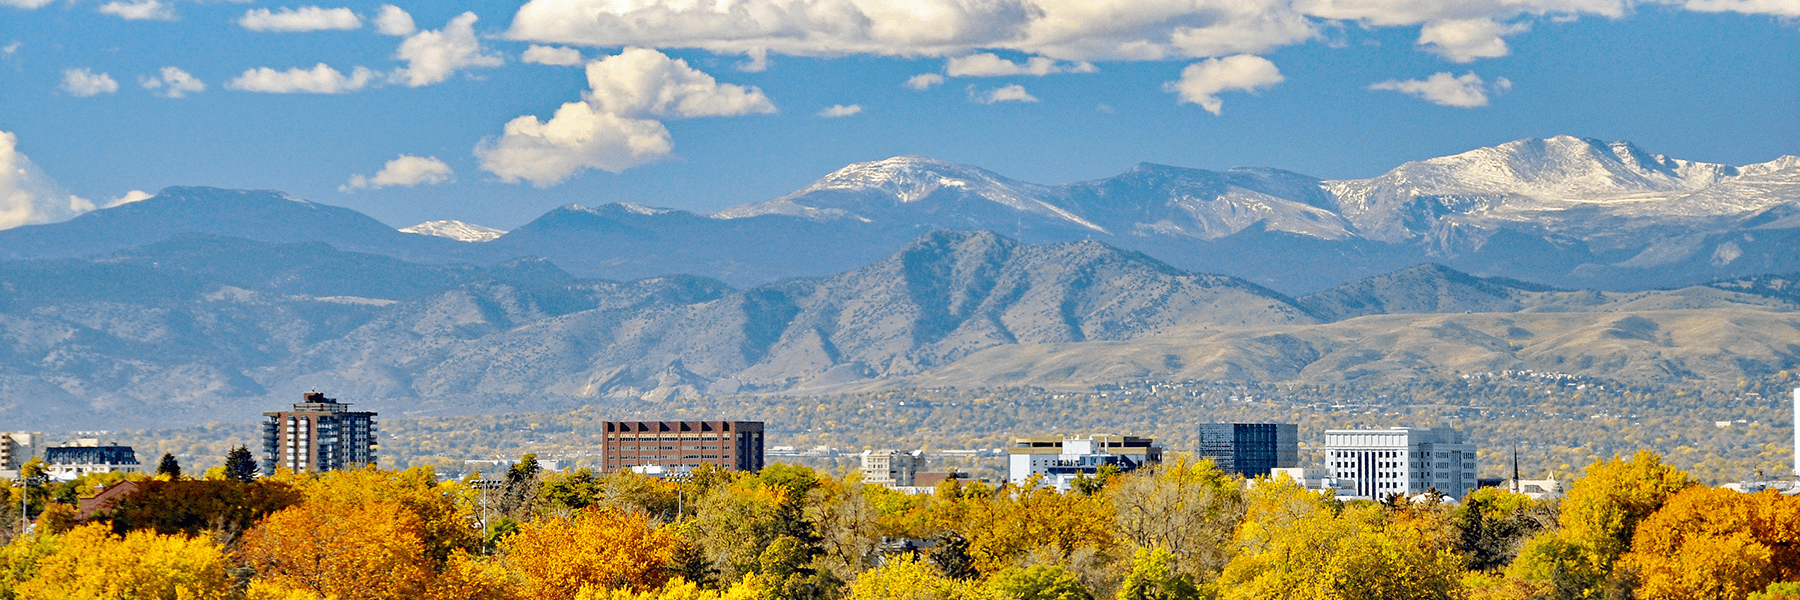 Denver Front Range, Credit: James St. John (Flickr, CC BY 2.0)